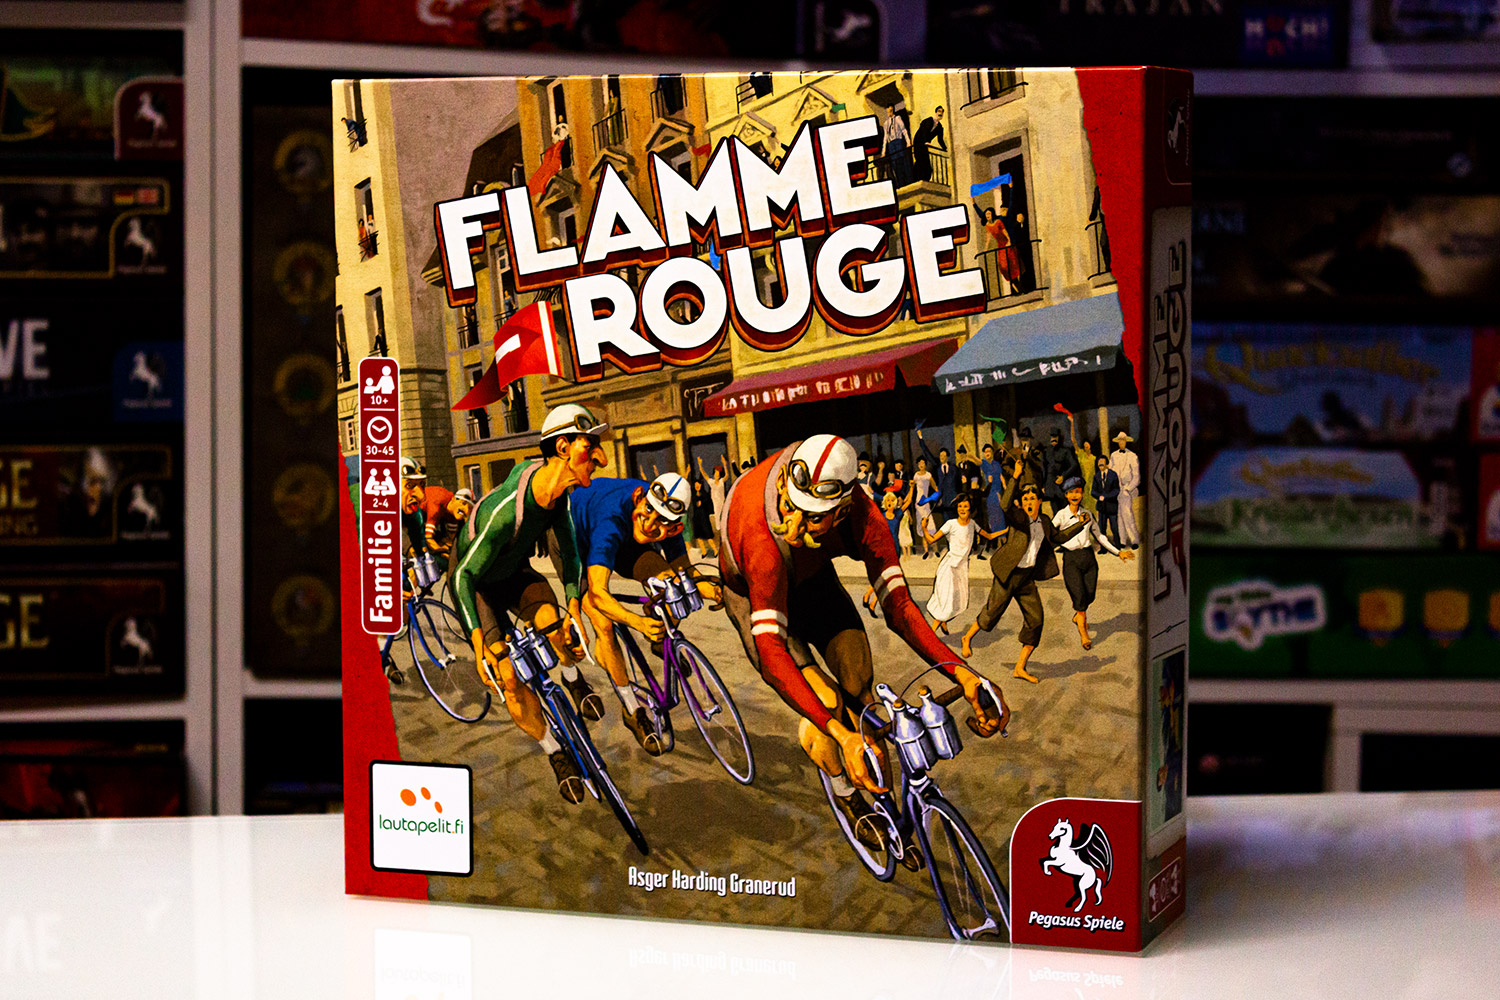 FLAMME ROUGE // Erste Bilder vom Spiel